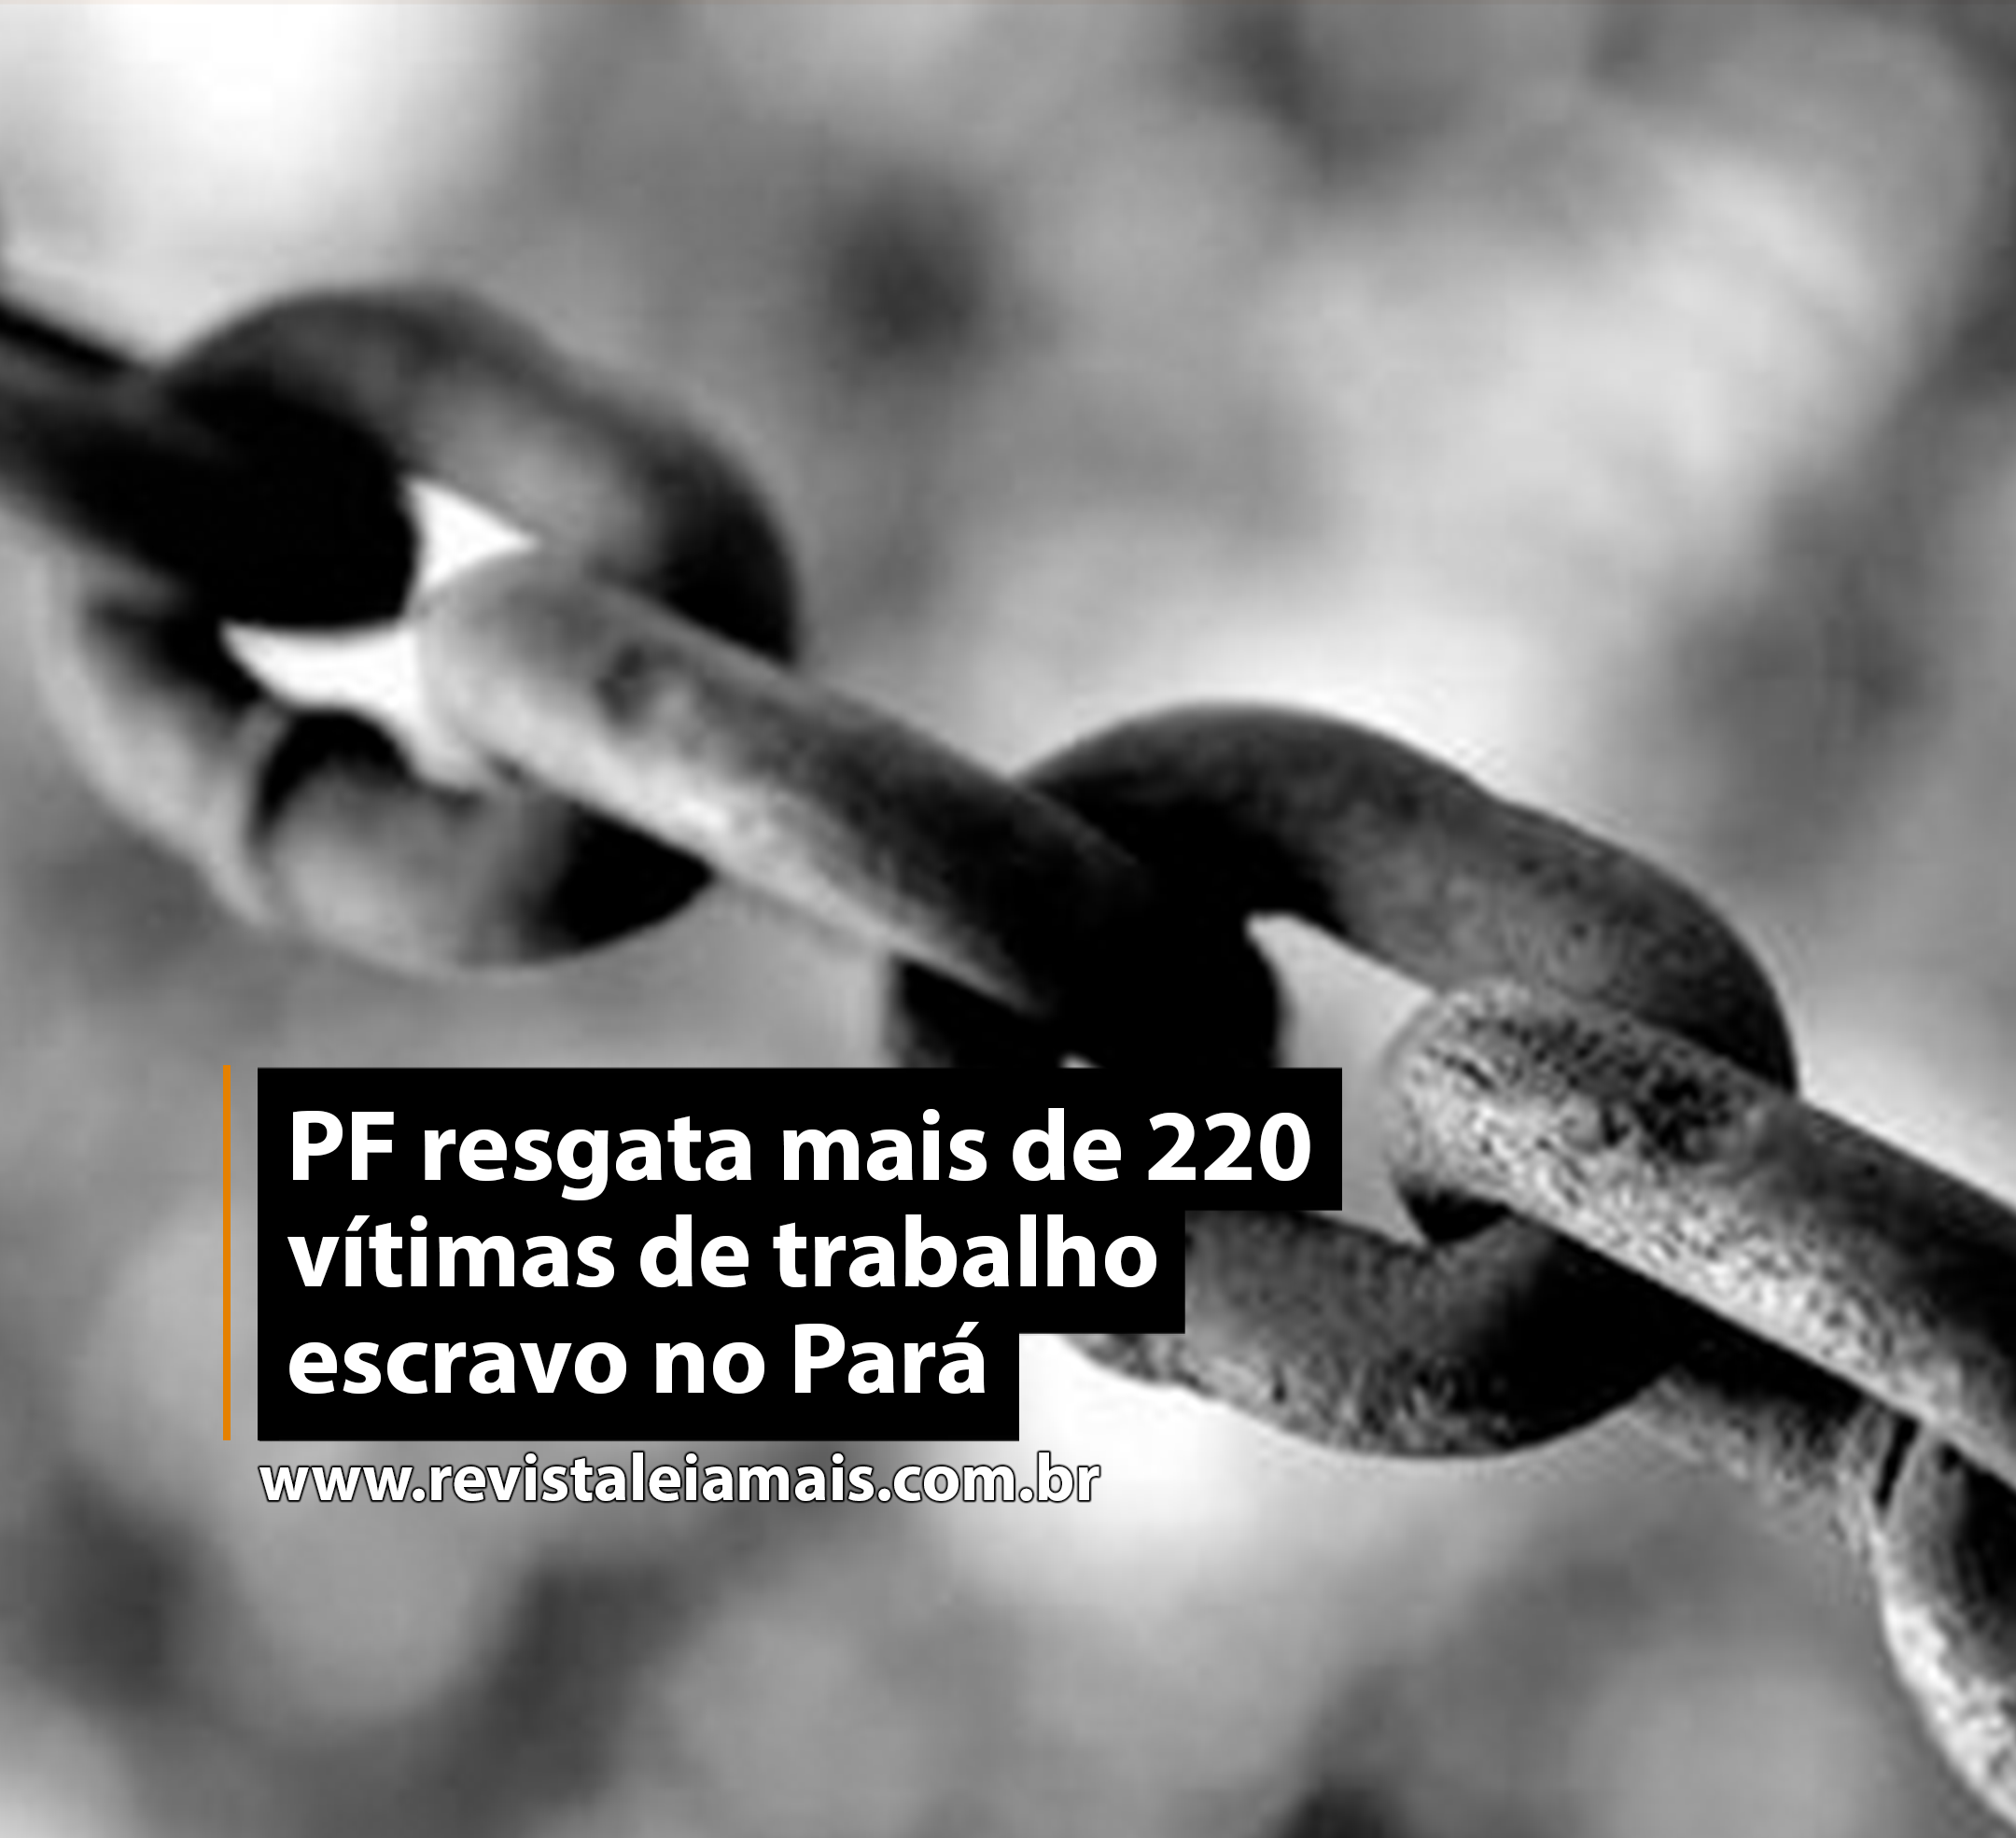 PF resgata mais de 220 vítimas de trabalho escravo no Pará